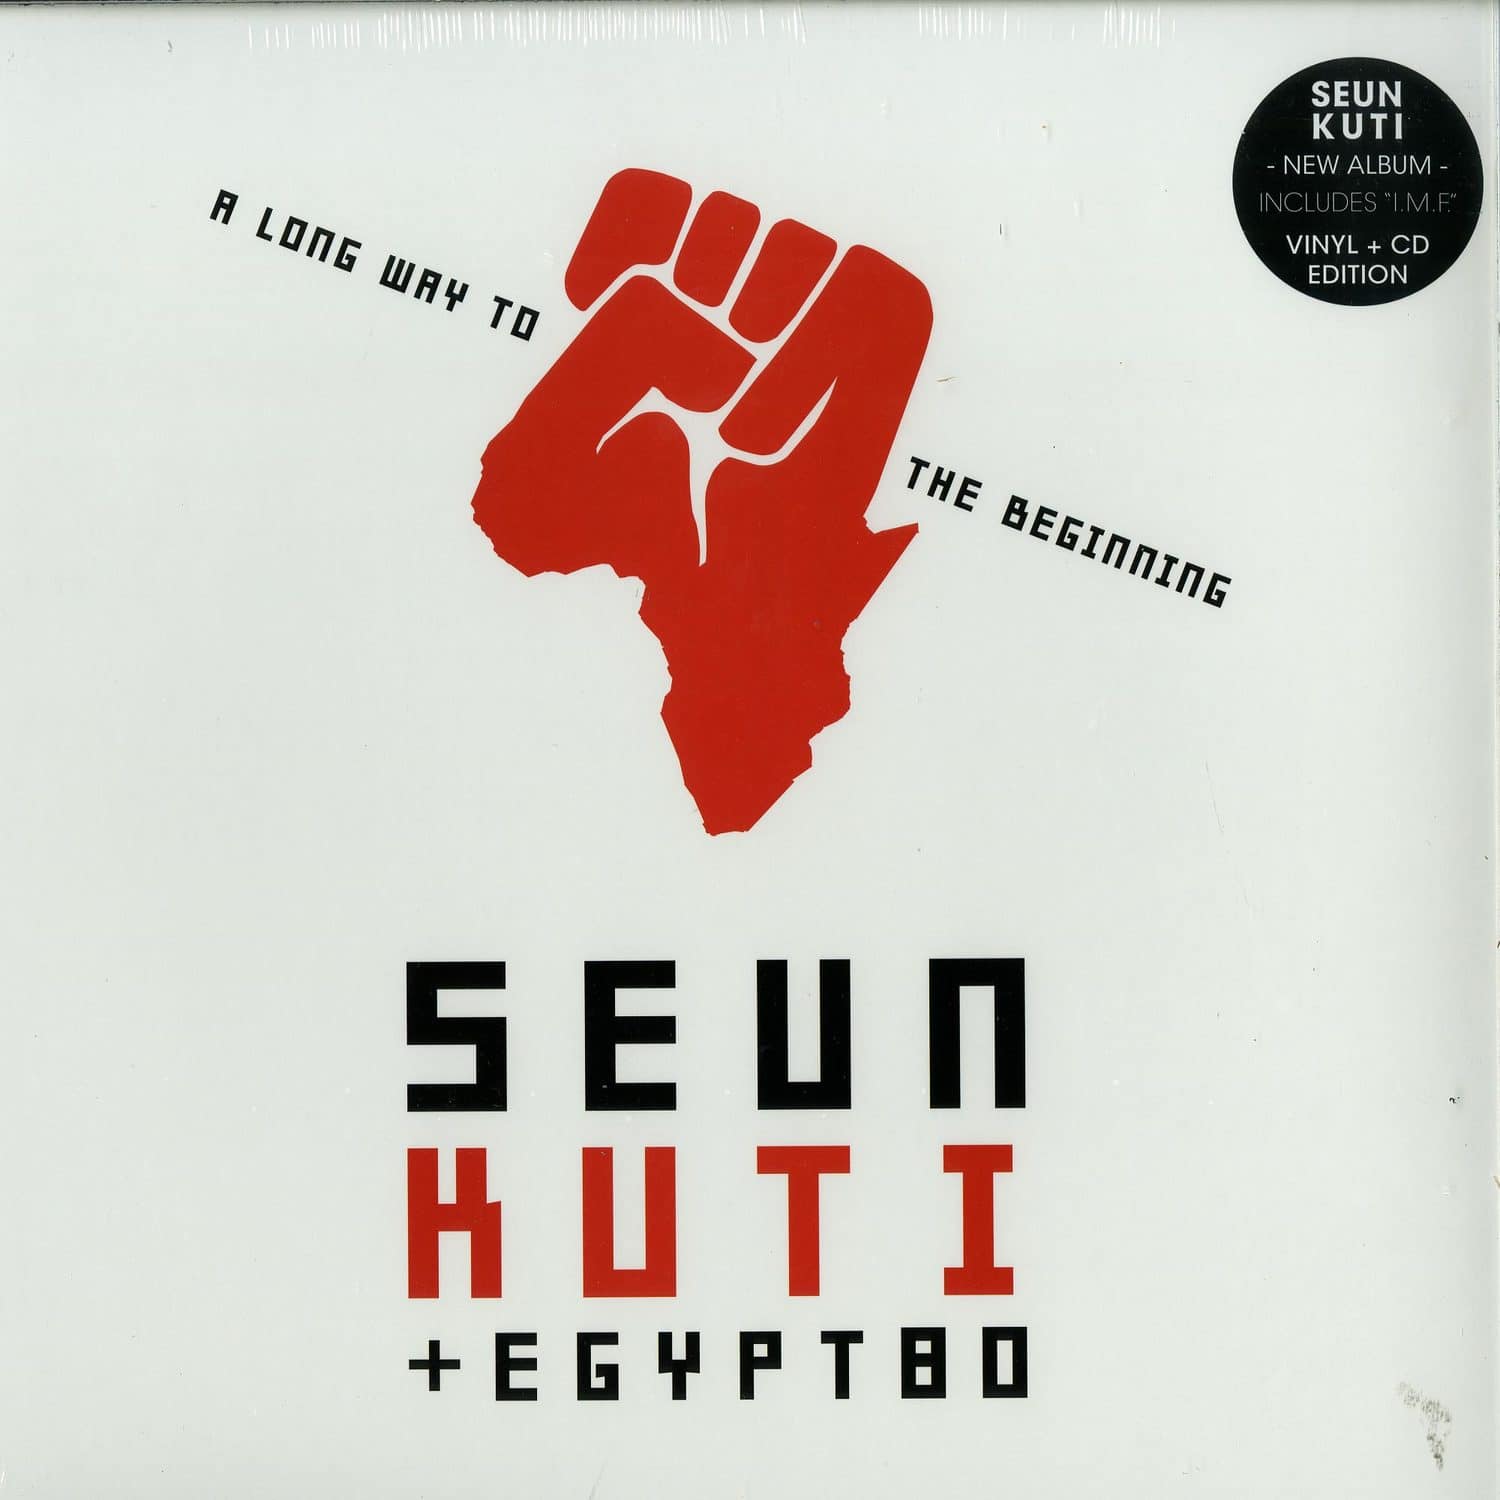 Seun Kuti - A LONG WAY TO THE BEGINNING 